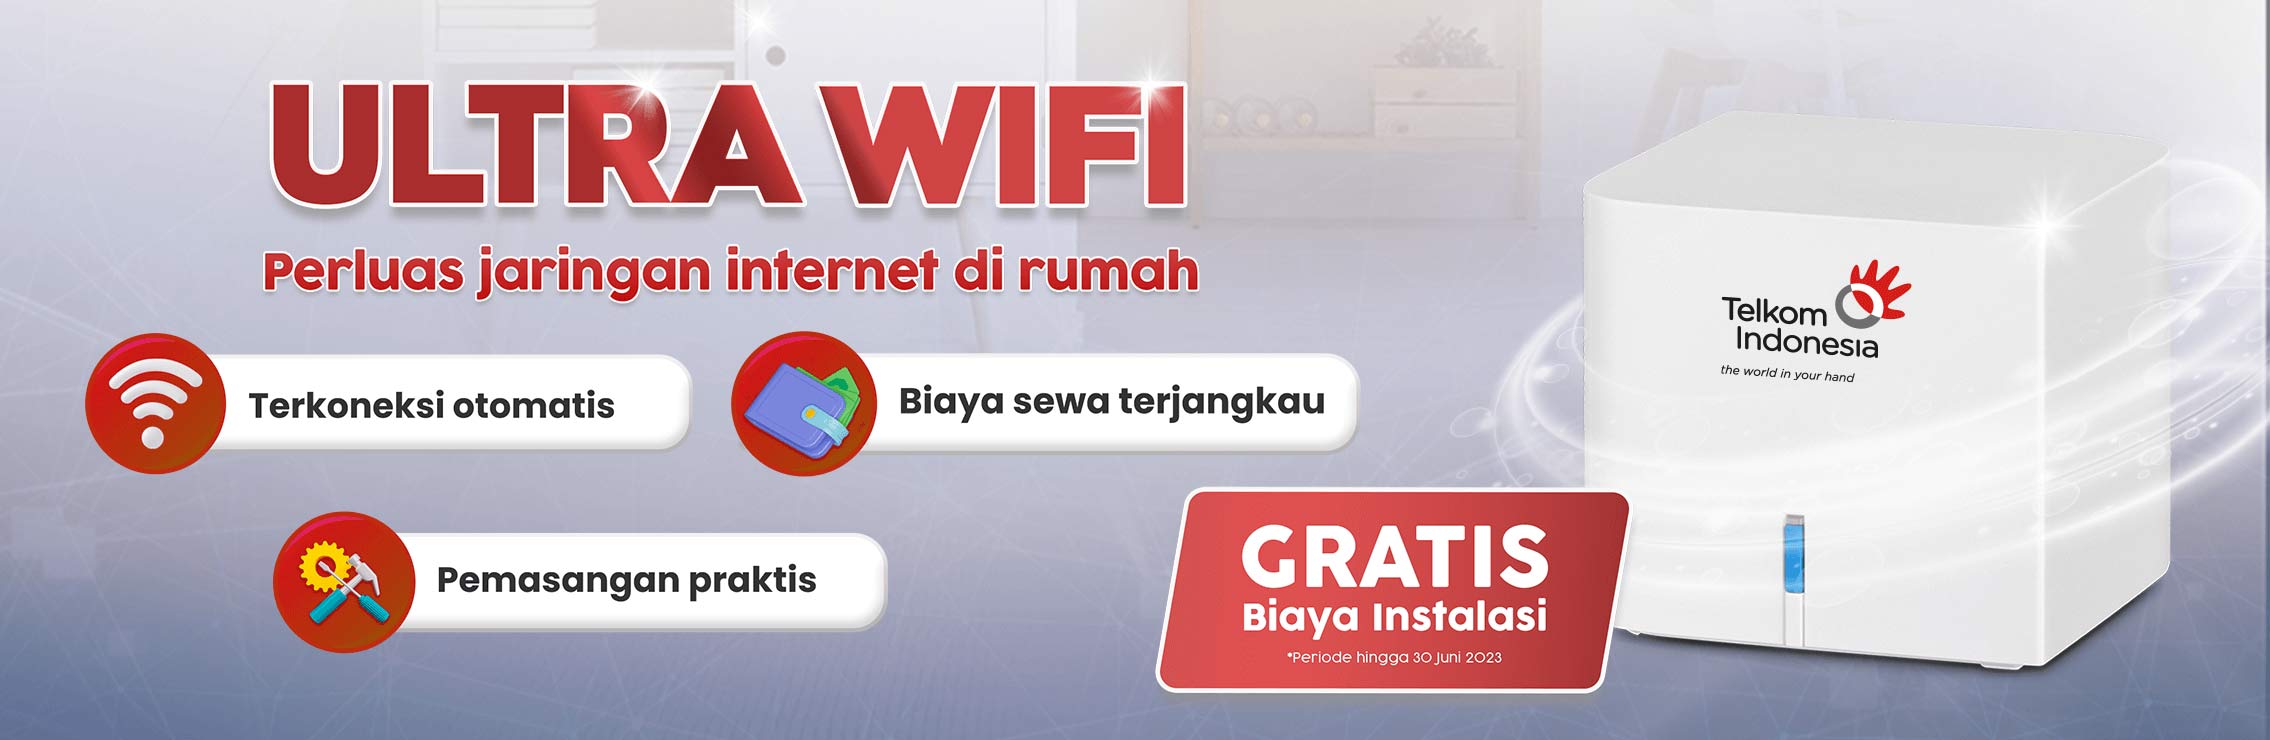 ultra wifi